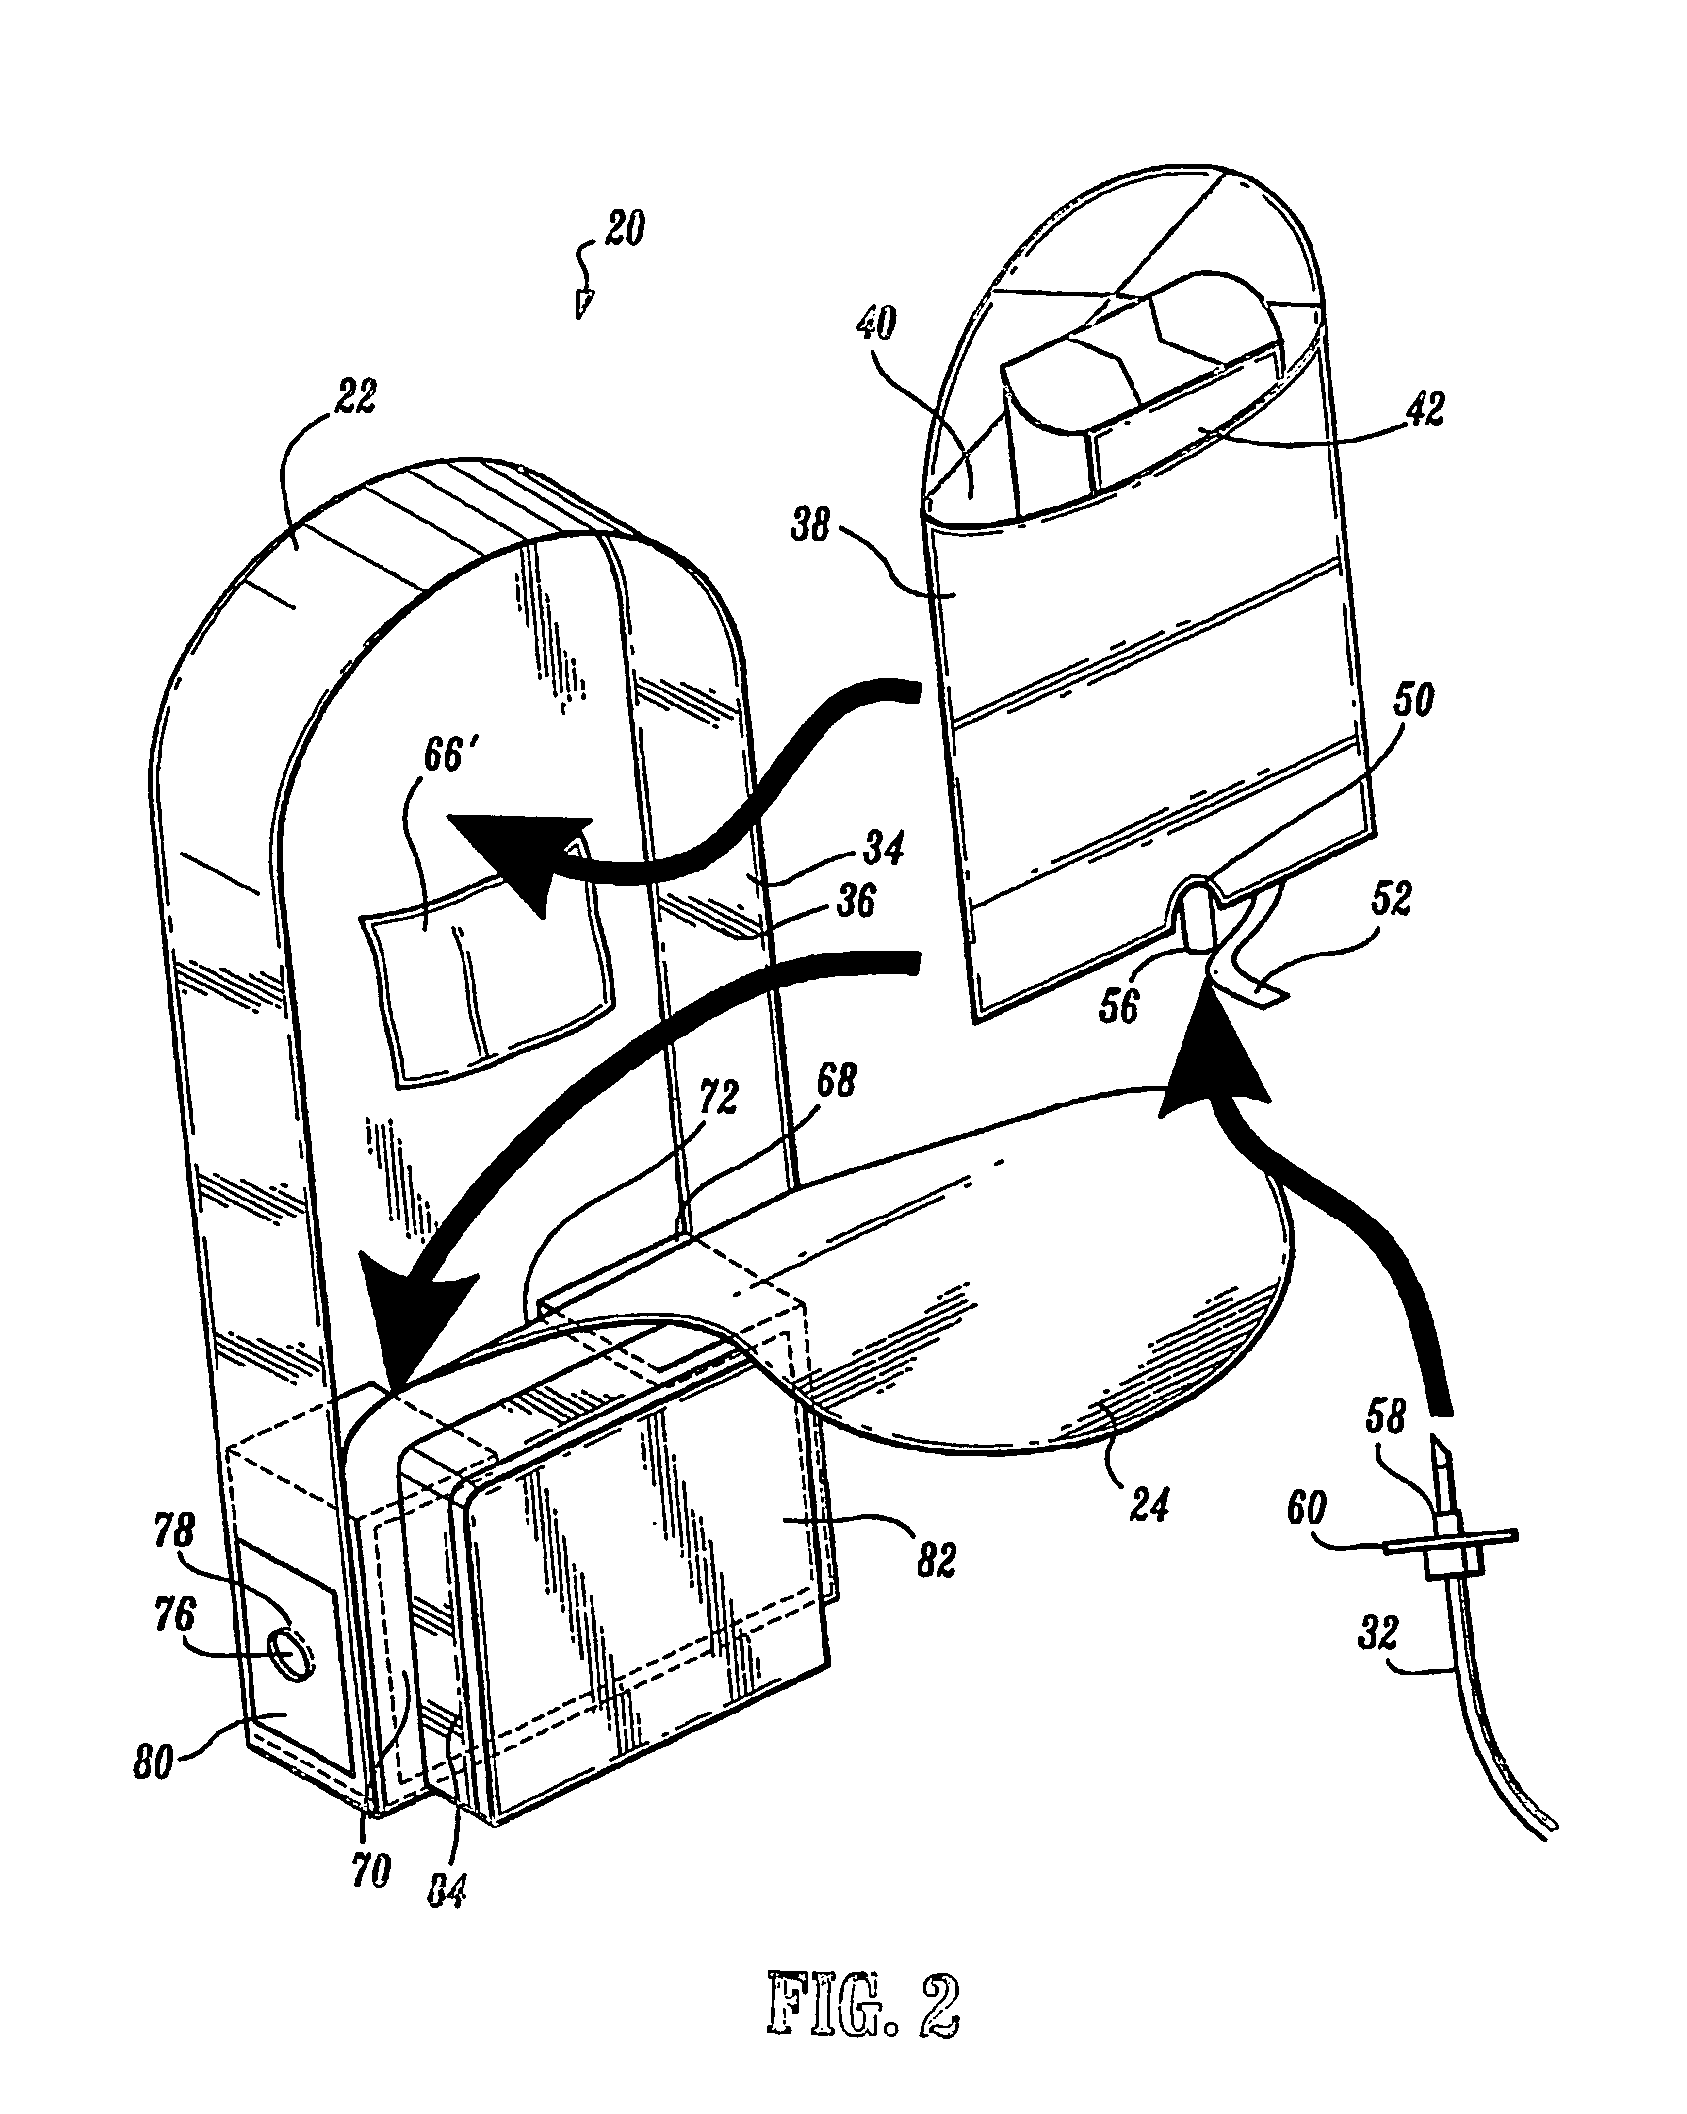 Portable enteral feeding apparatus